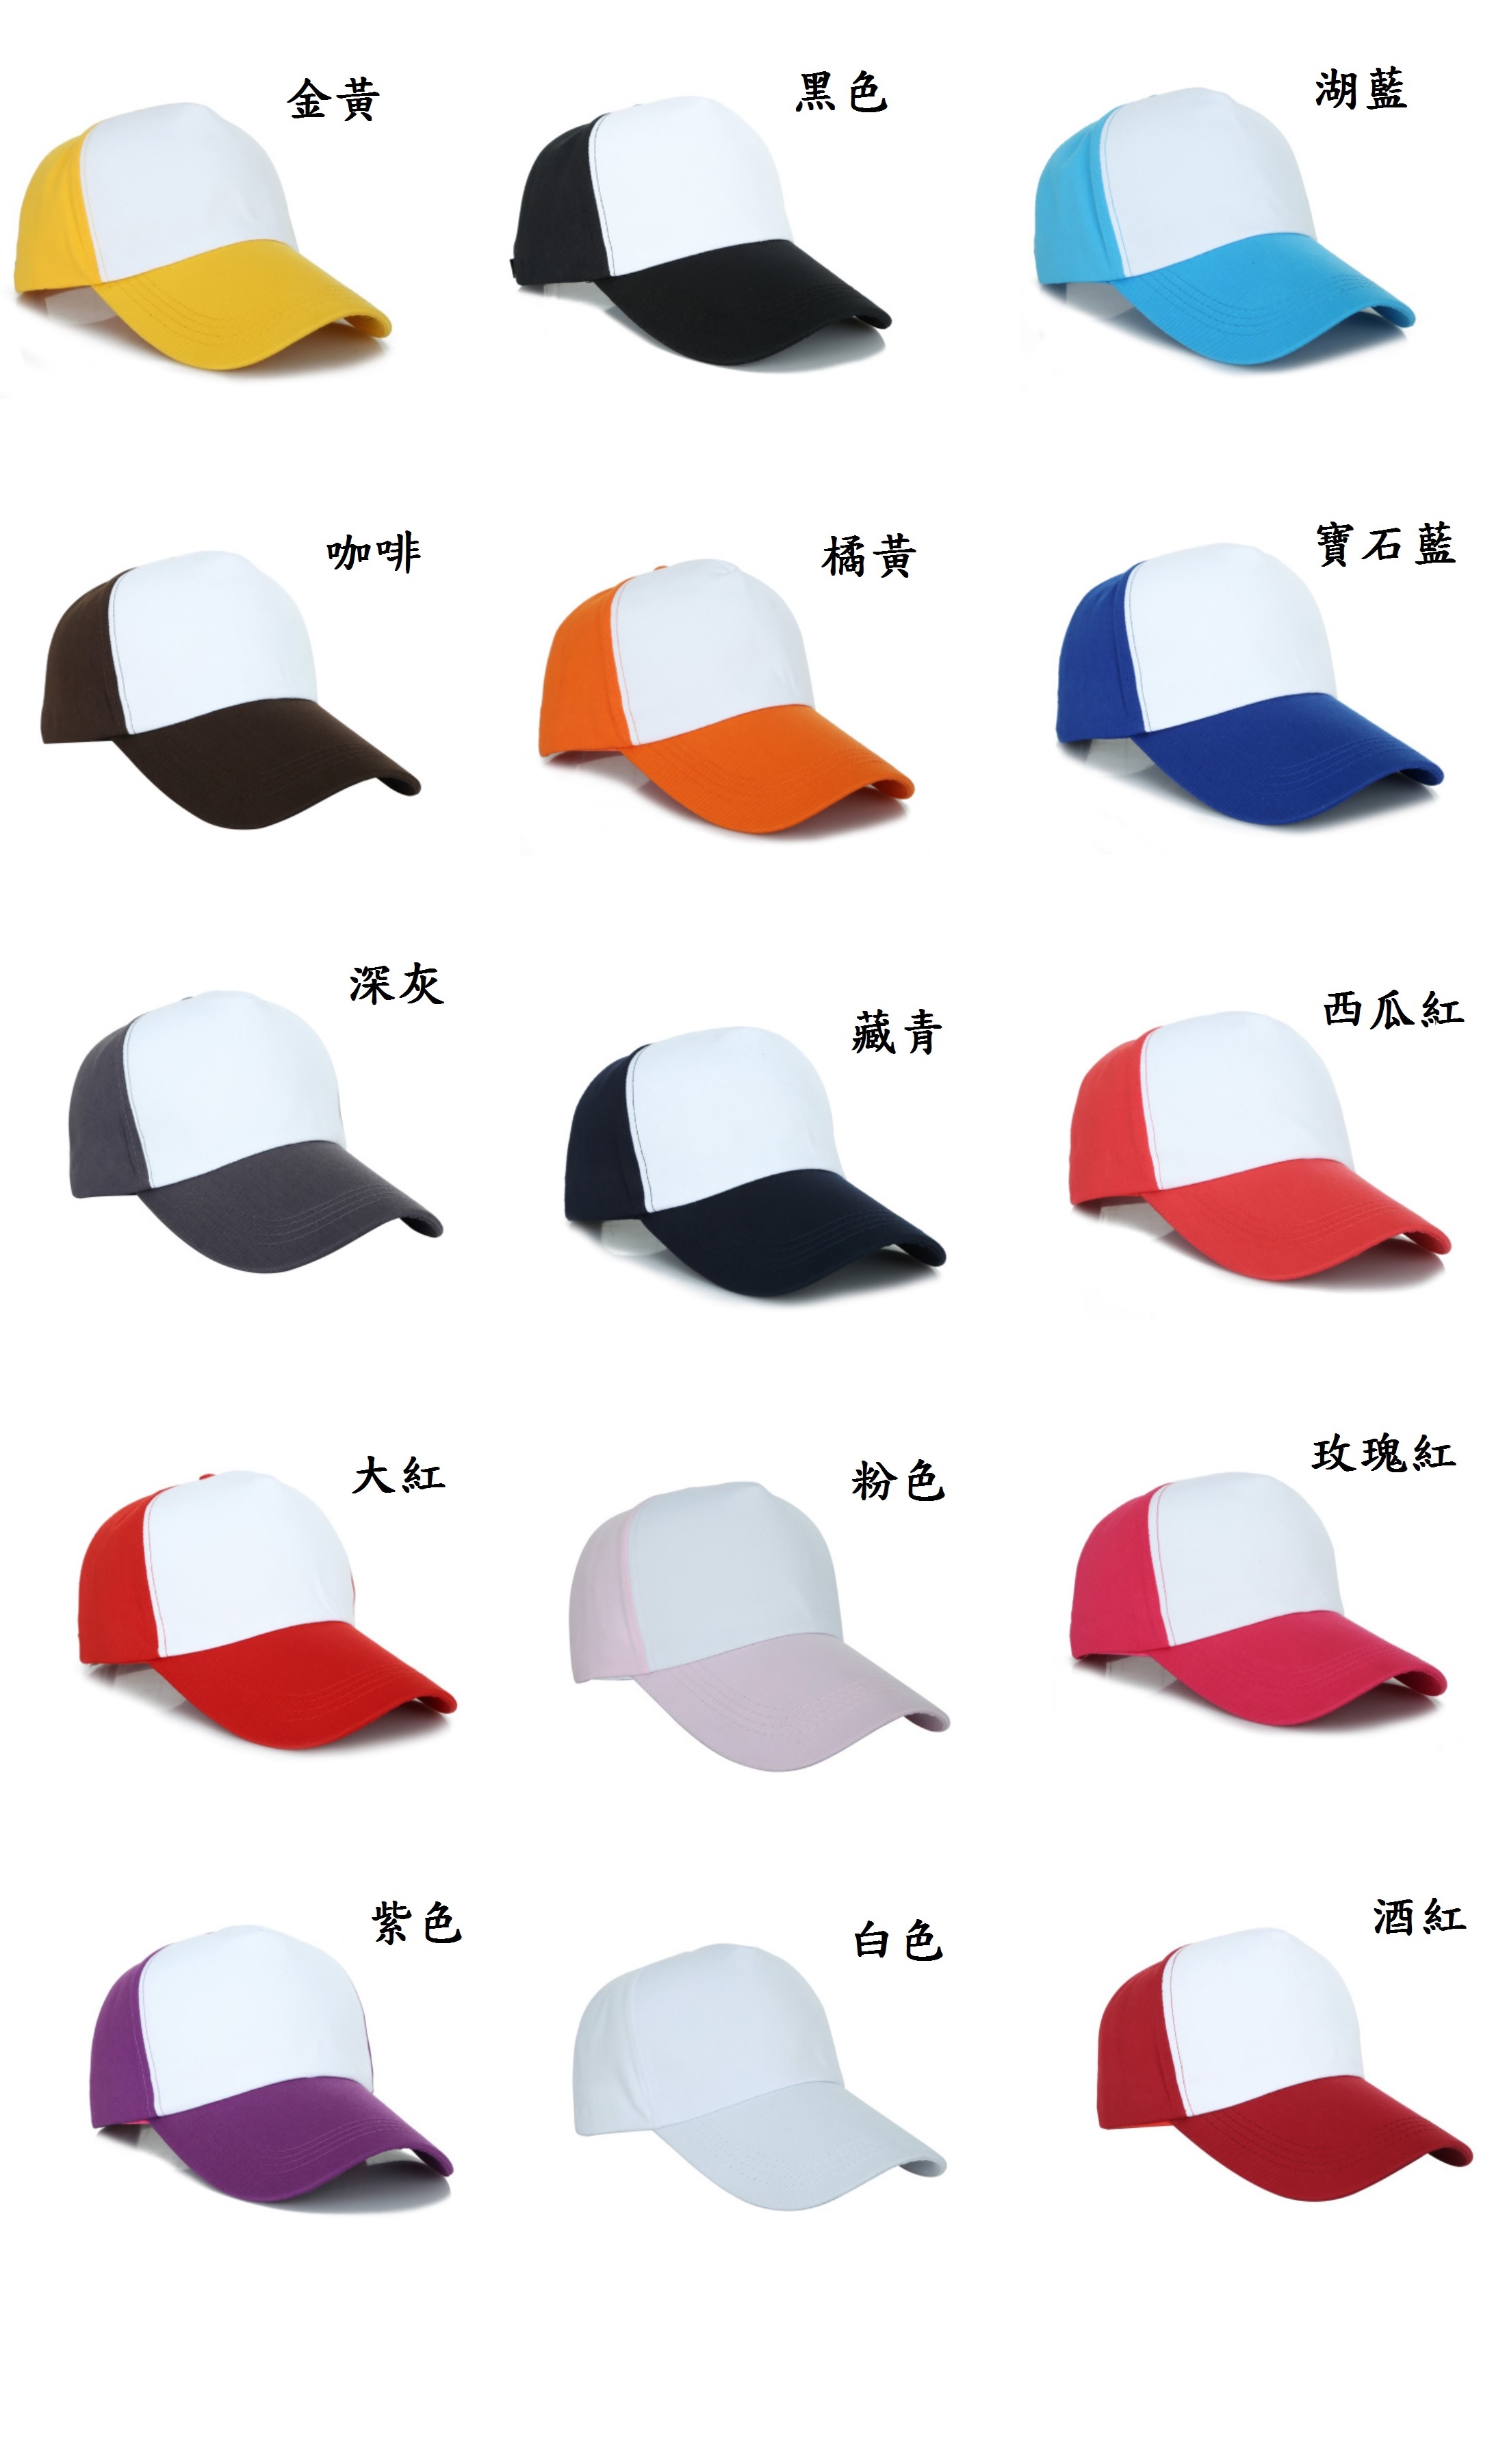 廣告帽、系服、班服、團體服顏色圖樣